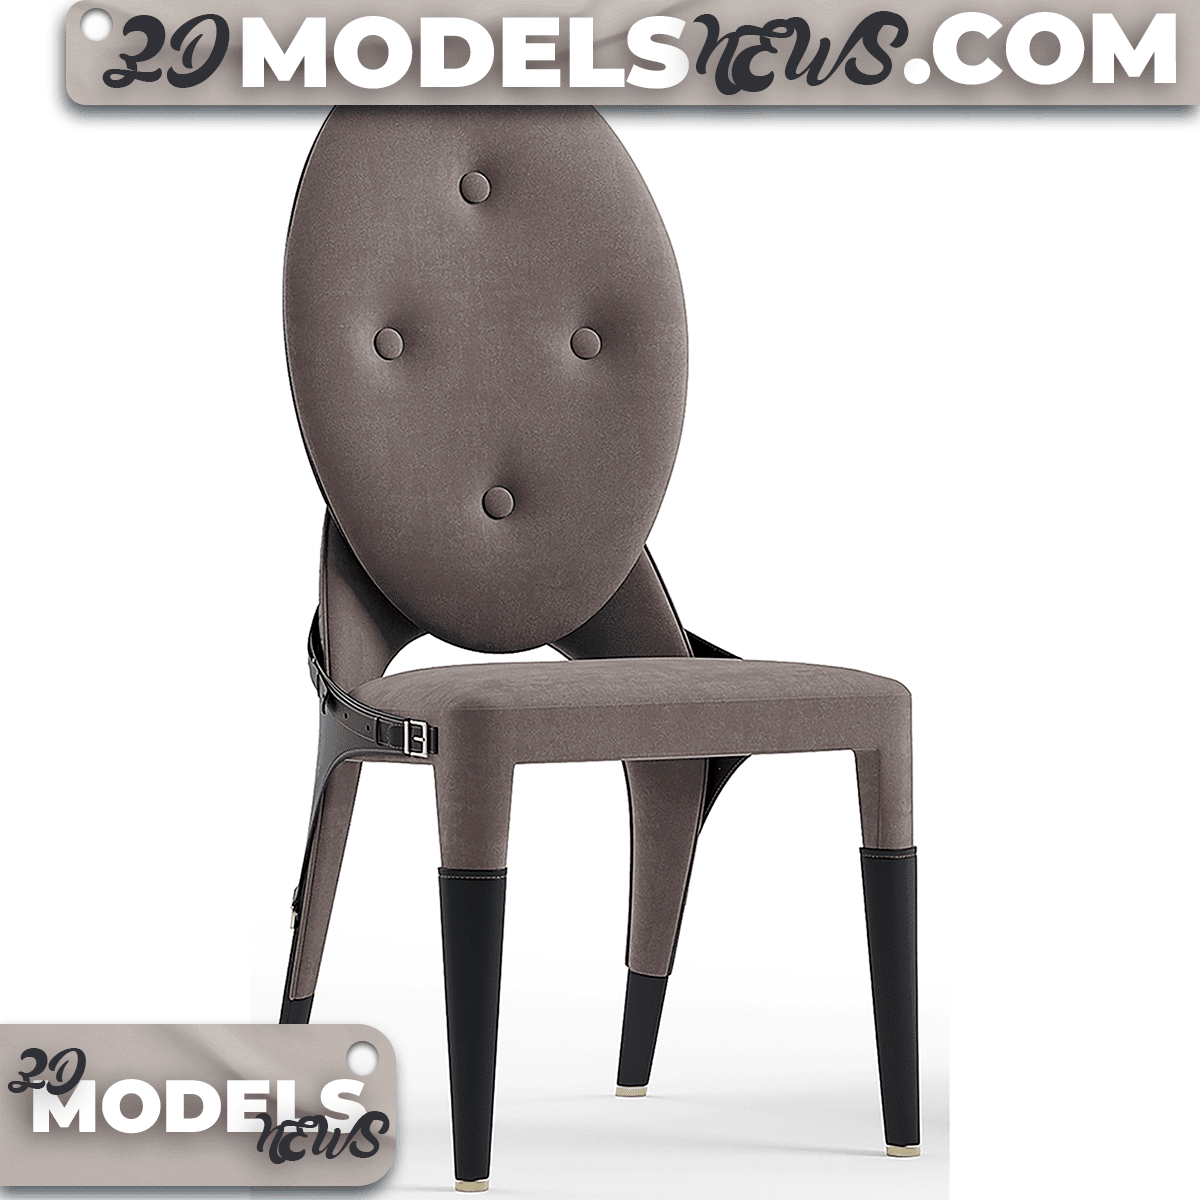 Gogolov Artem Chair Model 4